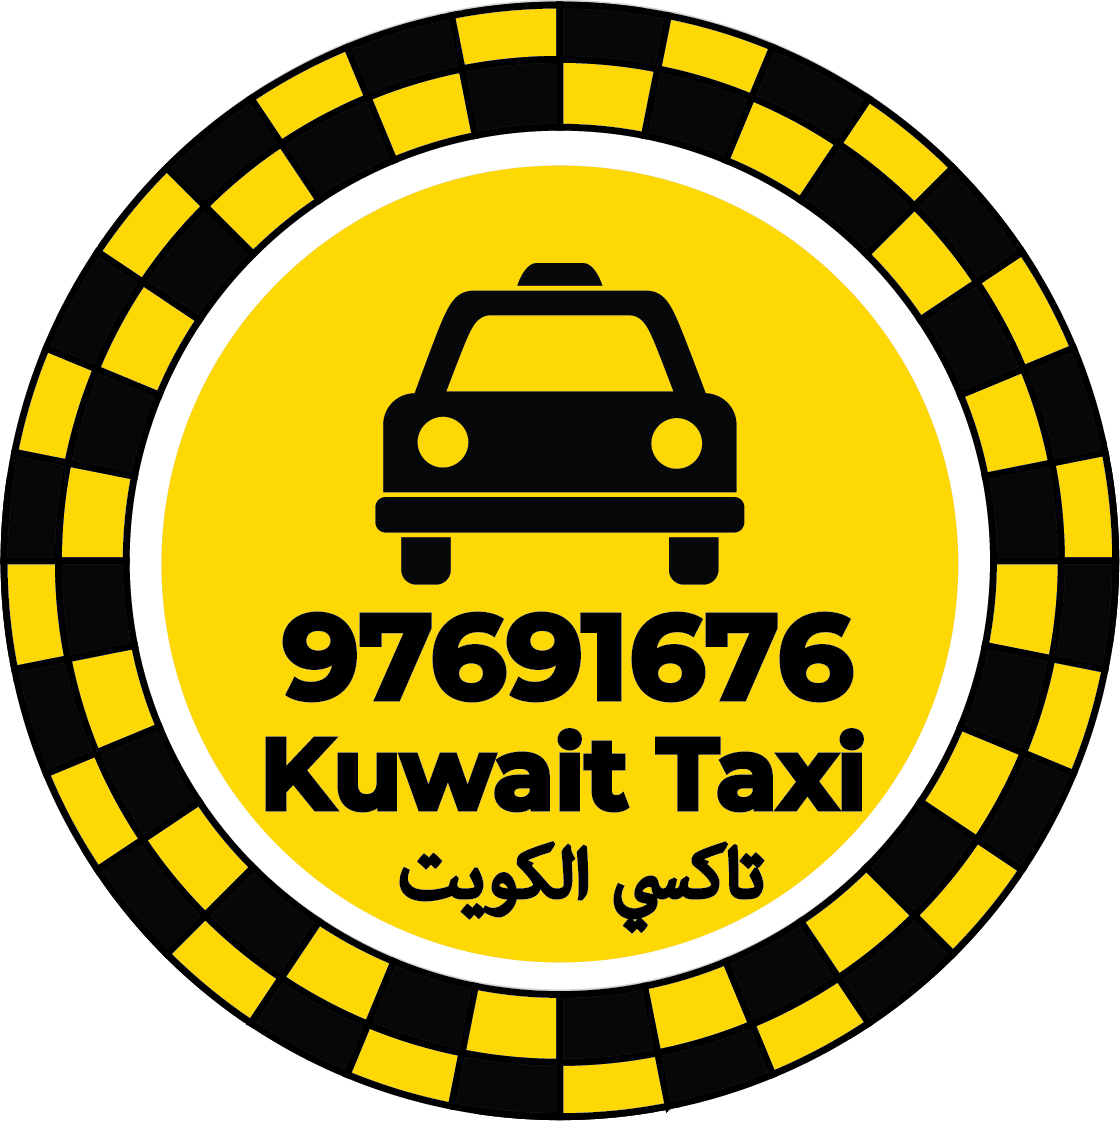 Qurtuba Taxi Kuwait – Taxi Number Qurtuba